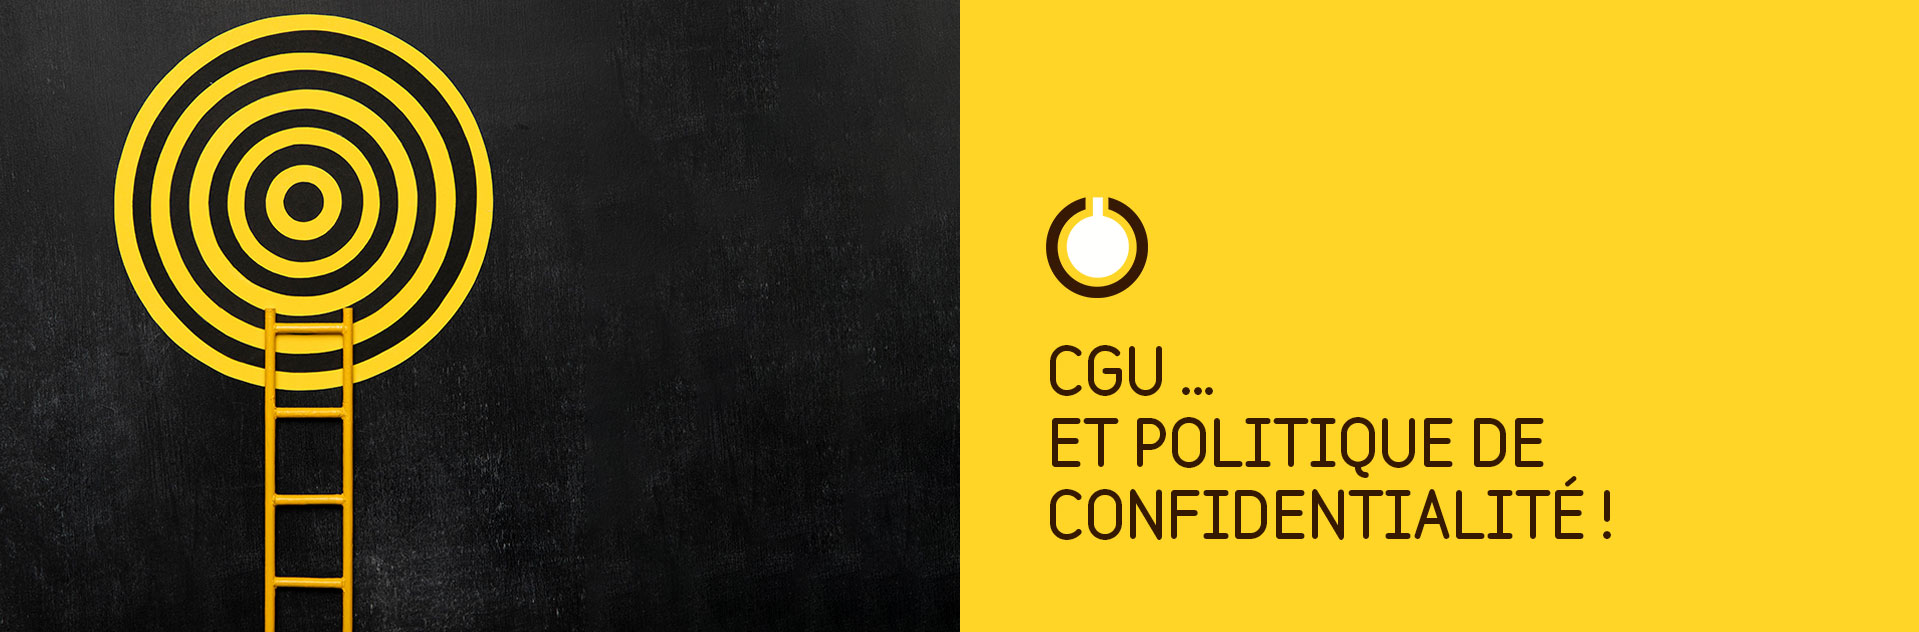 CGU – Politique de confidentialité